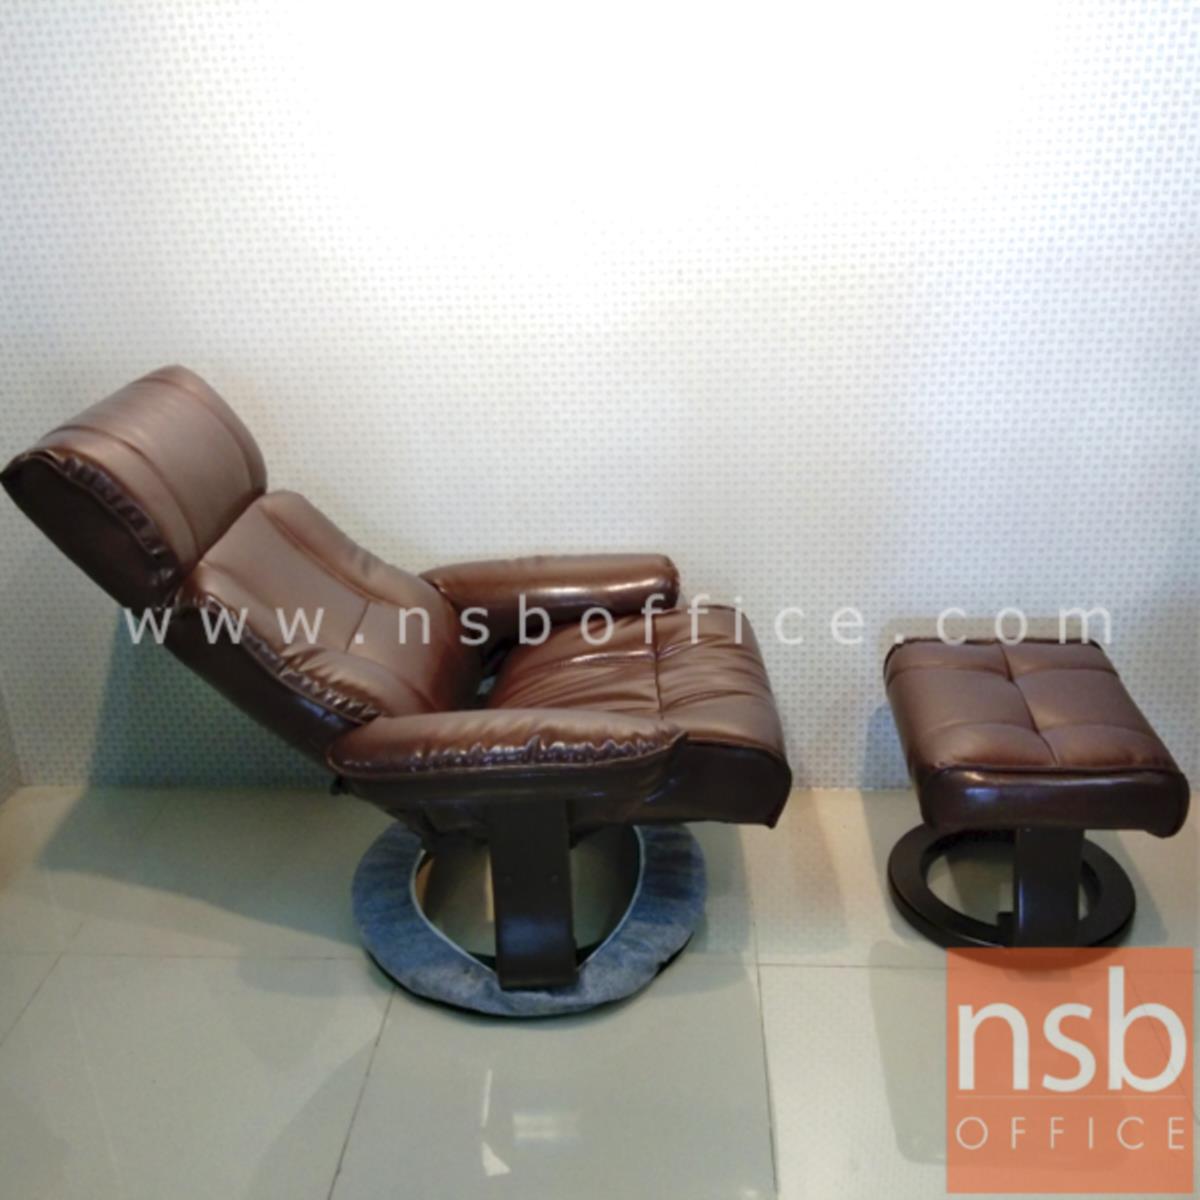 เก้าอี้พักผ่อนหนังไบแคส  รุ่น Sebert (เซเบิร์ต) ขนาด 80W cm. พร้อมที่พักเท้า